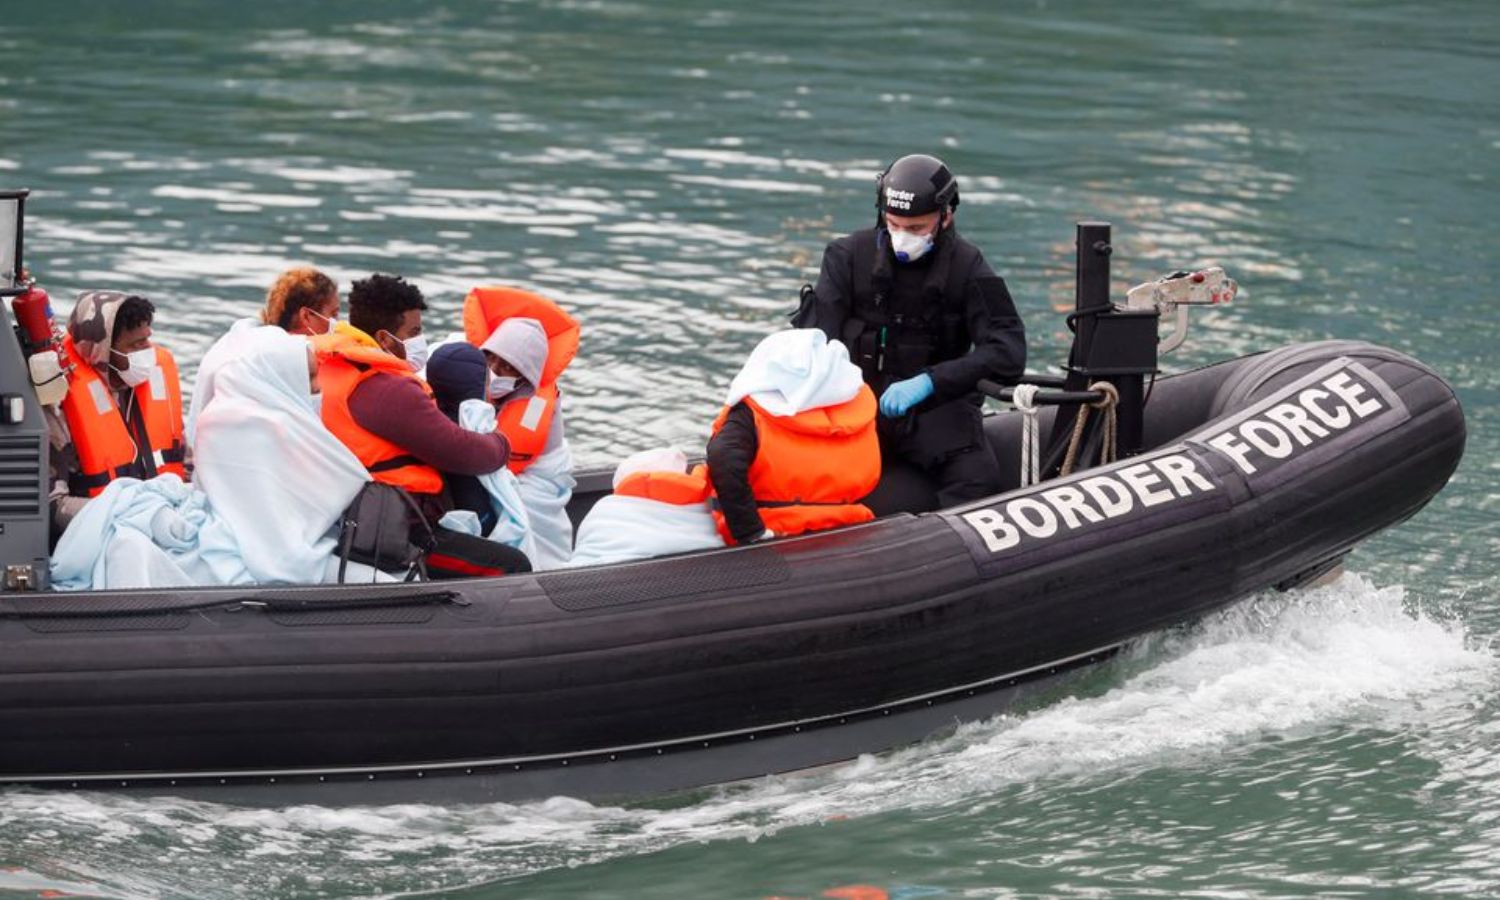 ضباط حرس الحدود يجلبون المهاجرين إلى ميناء "دوفر" على متن قارب ، بعد محاولتهم عبور القناة الإنجليزية- 7 من أيلول 2020 (رويترز)